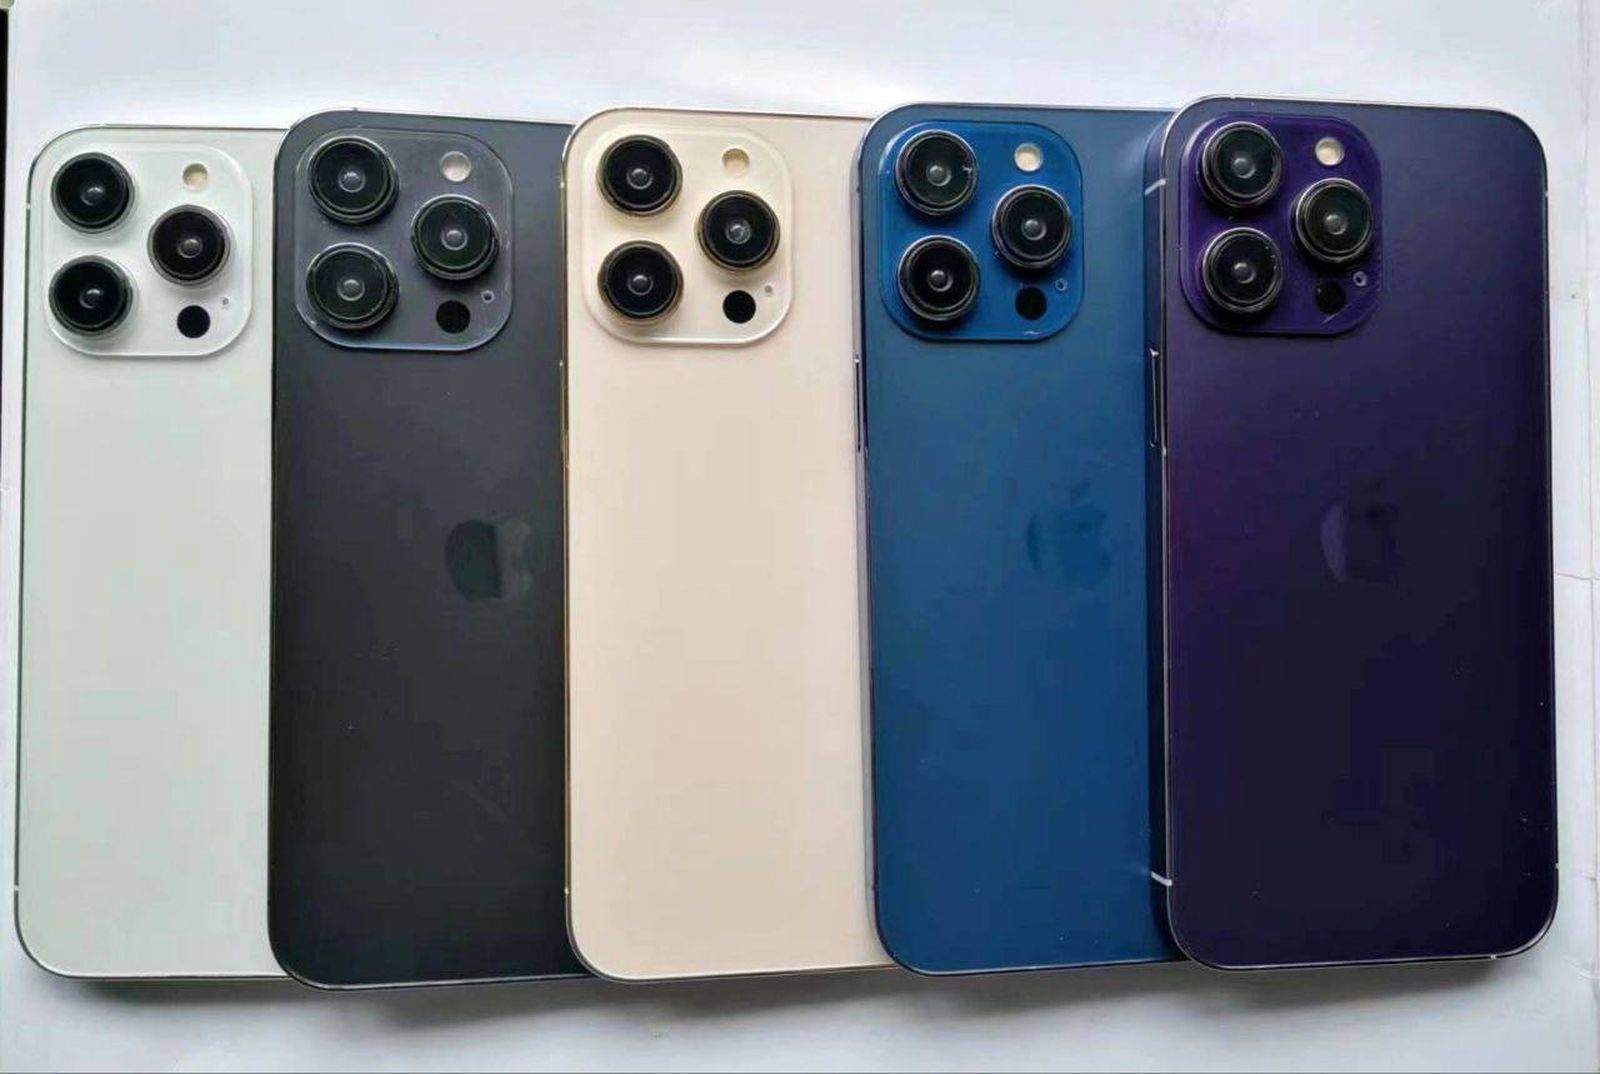 L’iPhone 14 Pro apparaît en violet et bleu sur les modèles factices